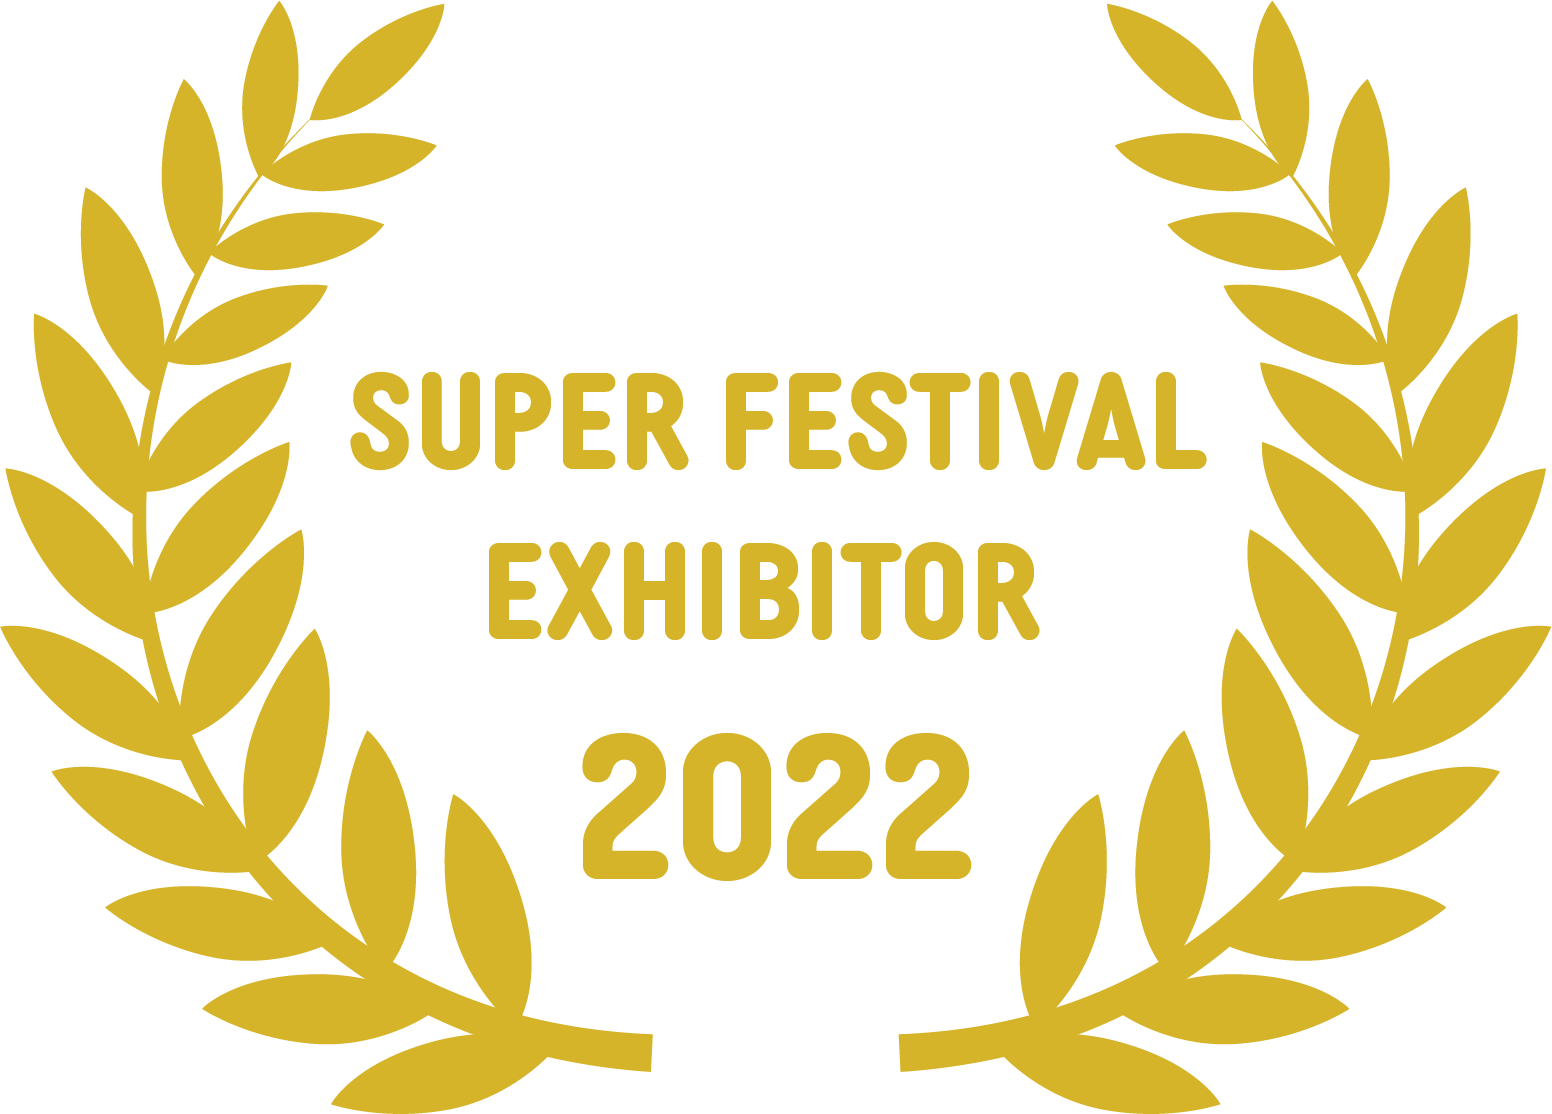 Super Festival Exhibitor 2022